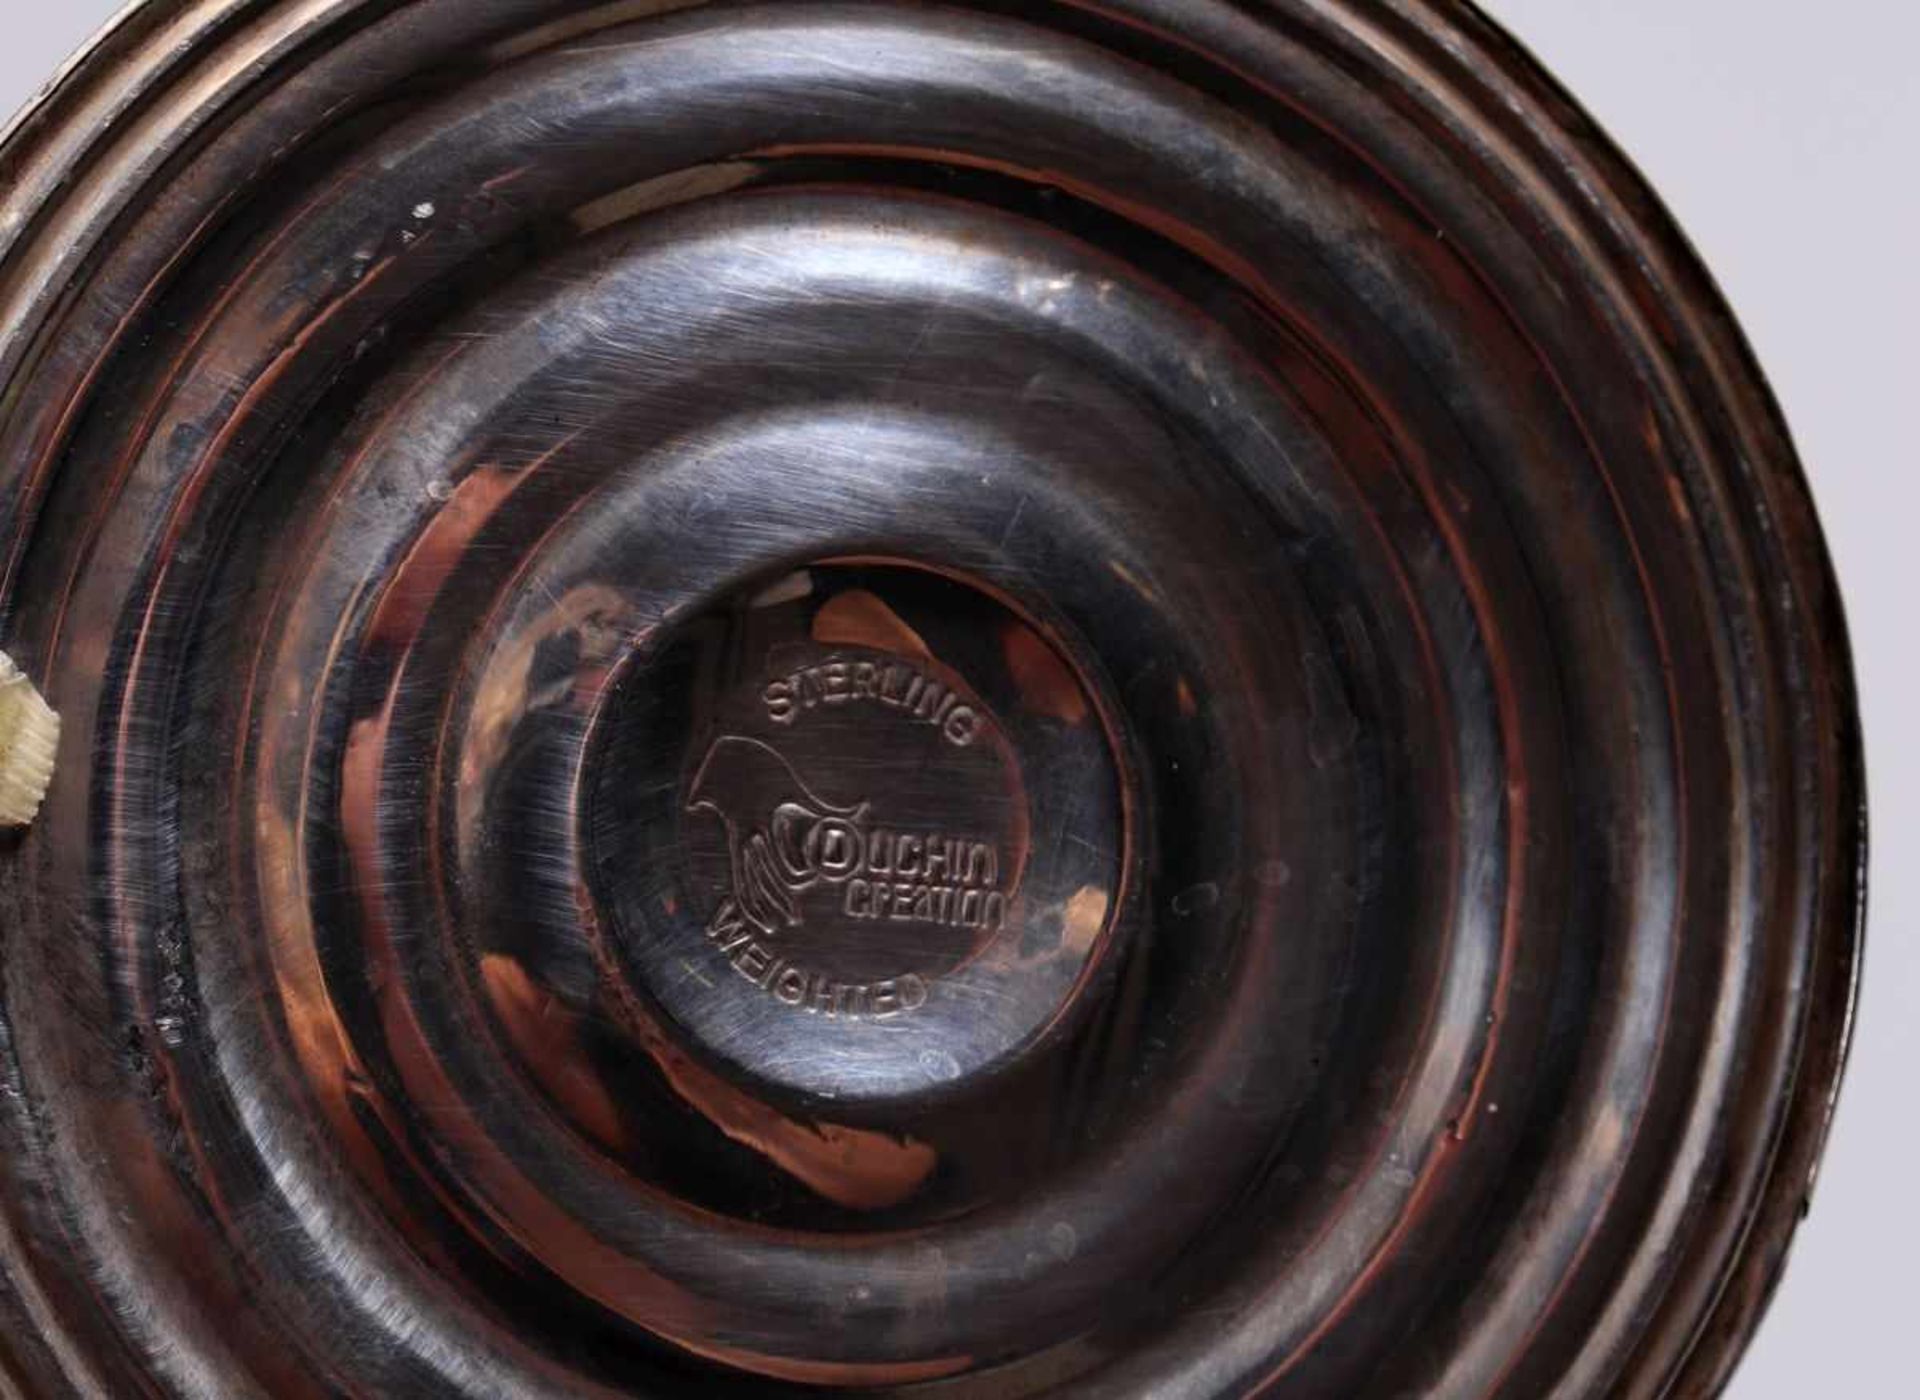 Tafelleuchter925er Silber, USA, 20.Jh., gebauchter Schaft, 3-flg. Aufsatz, H: 24,5cm, Fuß beschwert, - Bild 3 aus 3